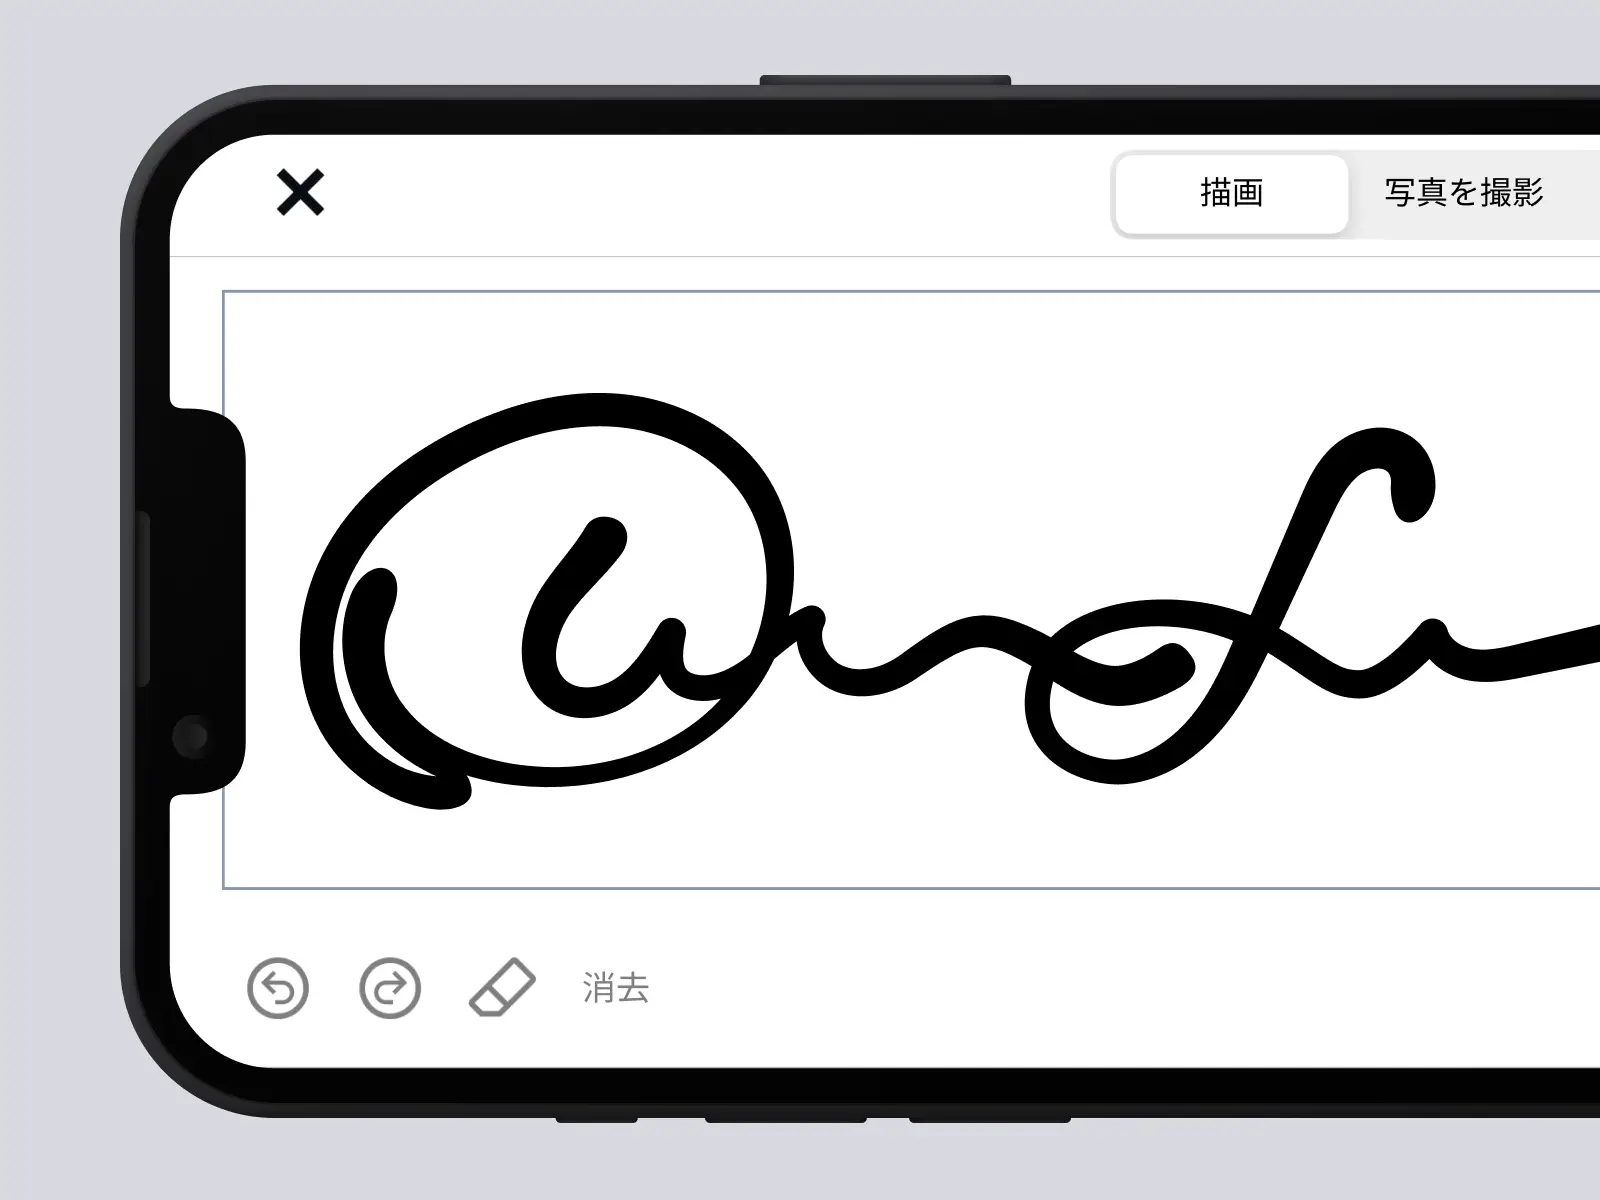 DocuSignアプリで描かれた署名が表示されている携帯電話の画面